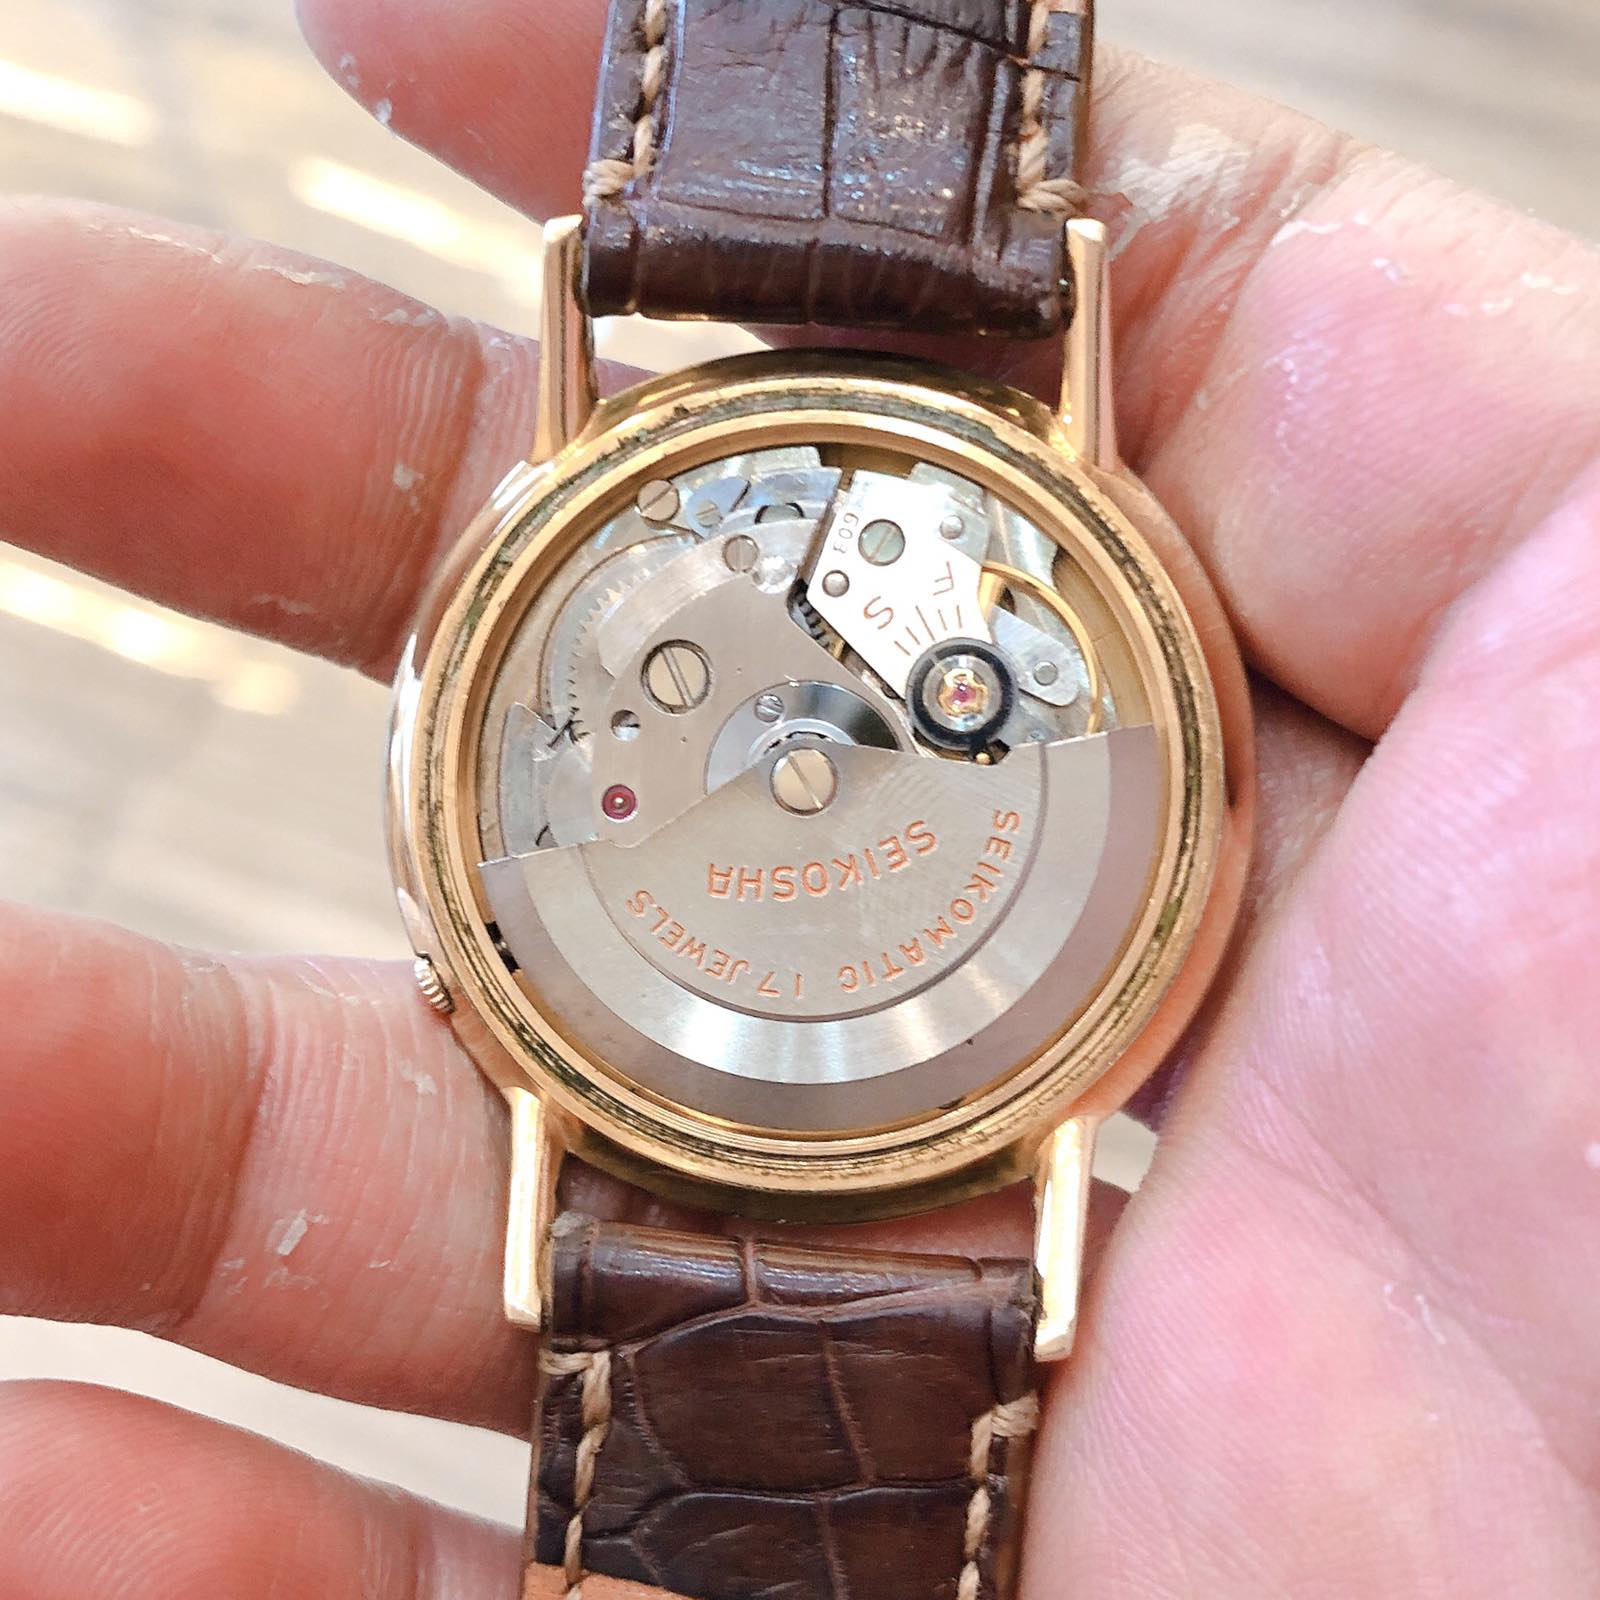 Đồng hồ cổ SEIKO Matic bọc vàng 18k chính hãng nhật bản